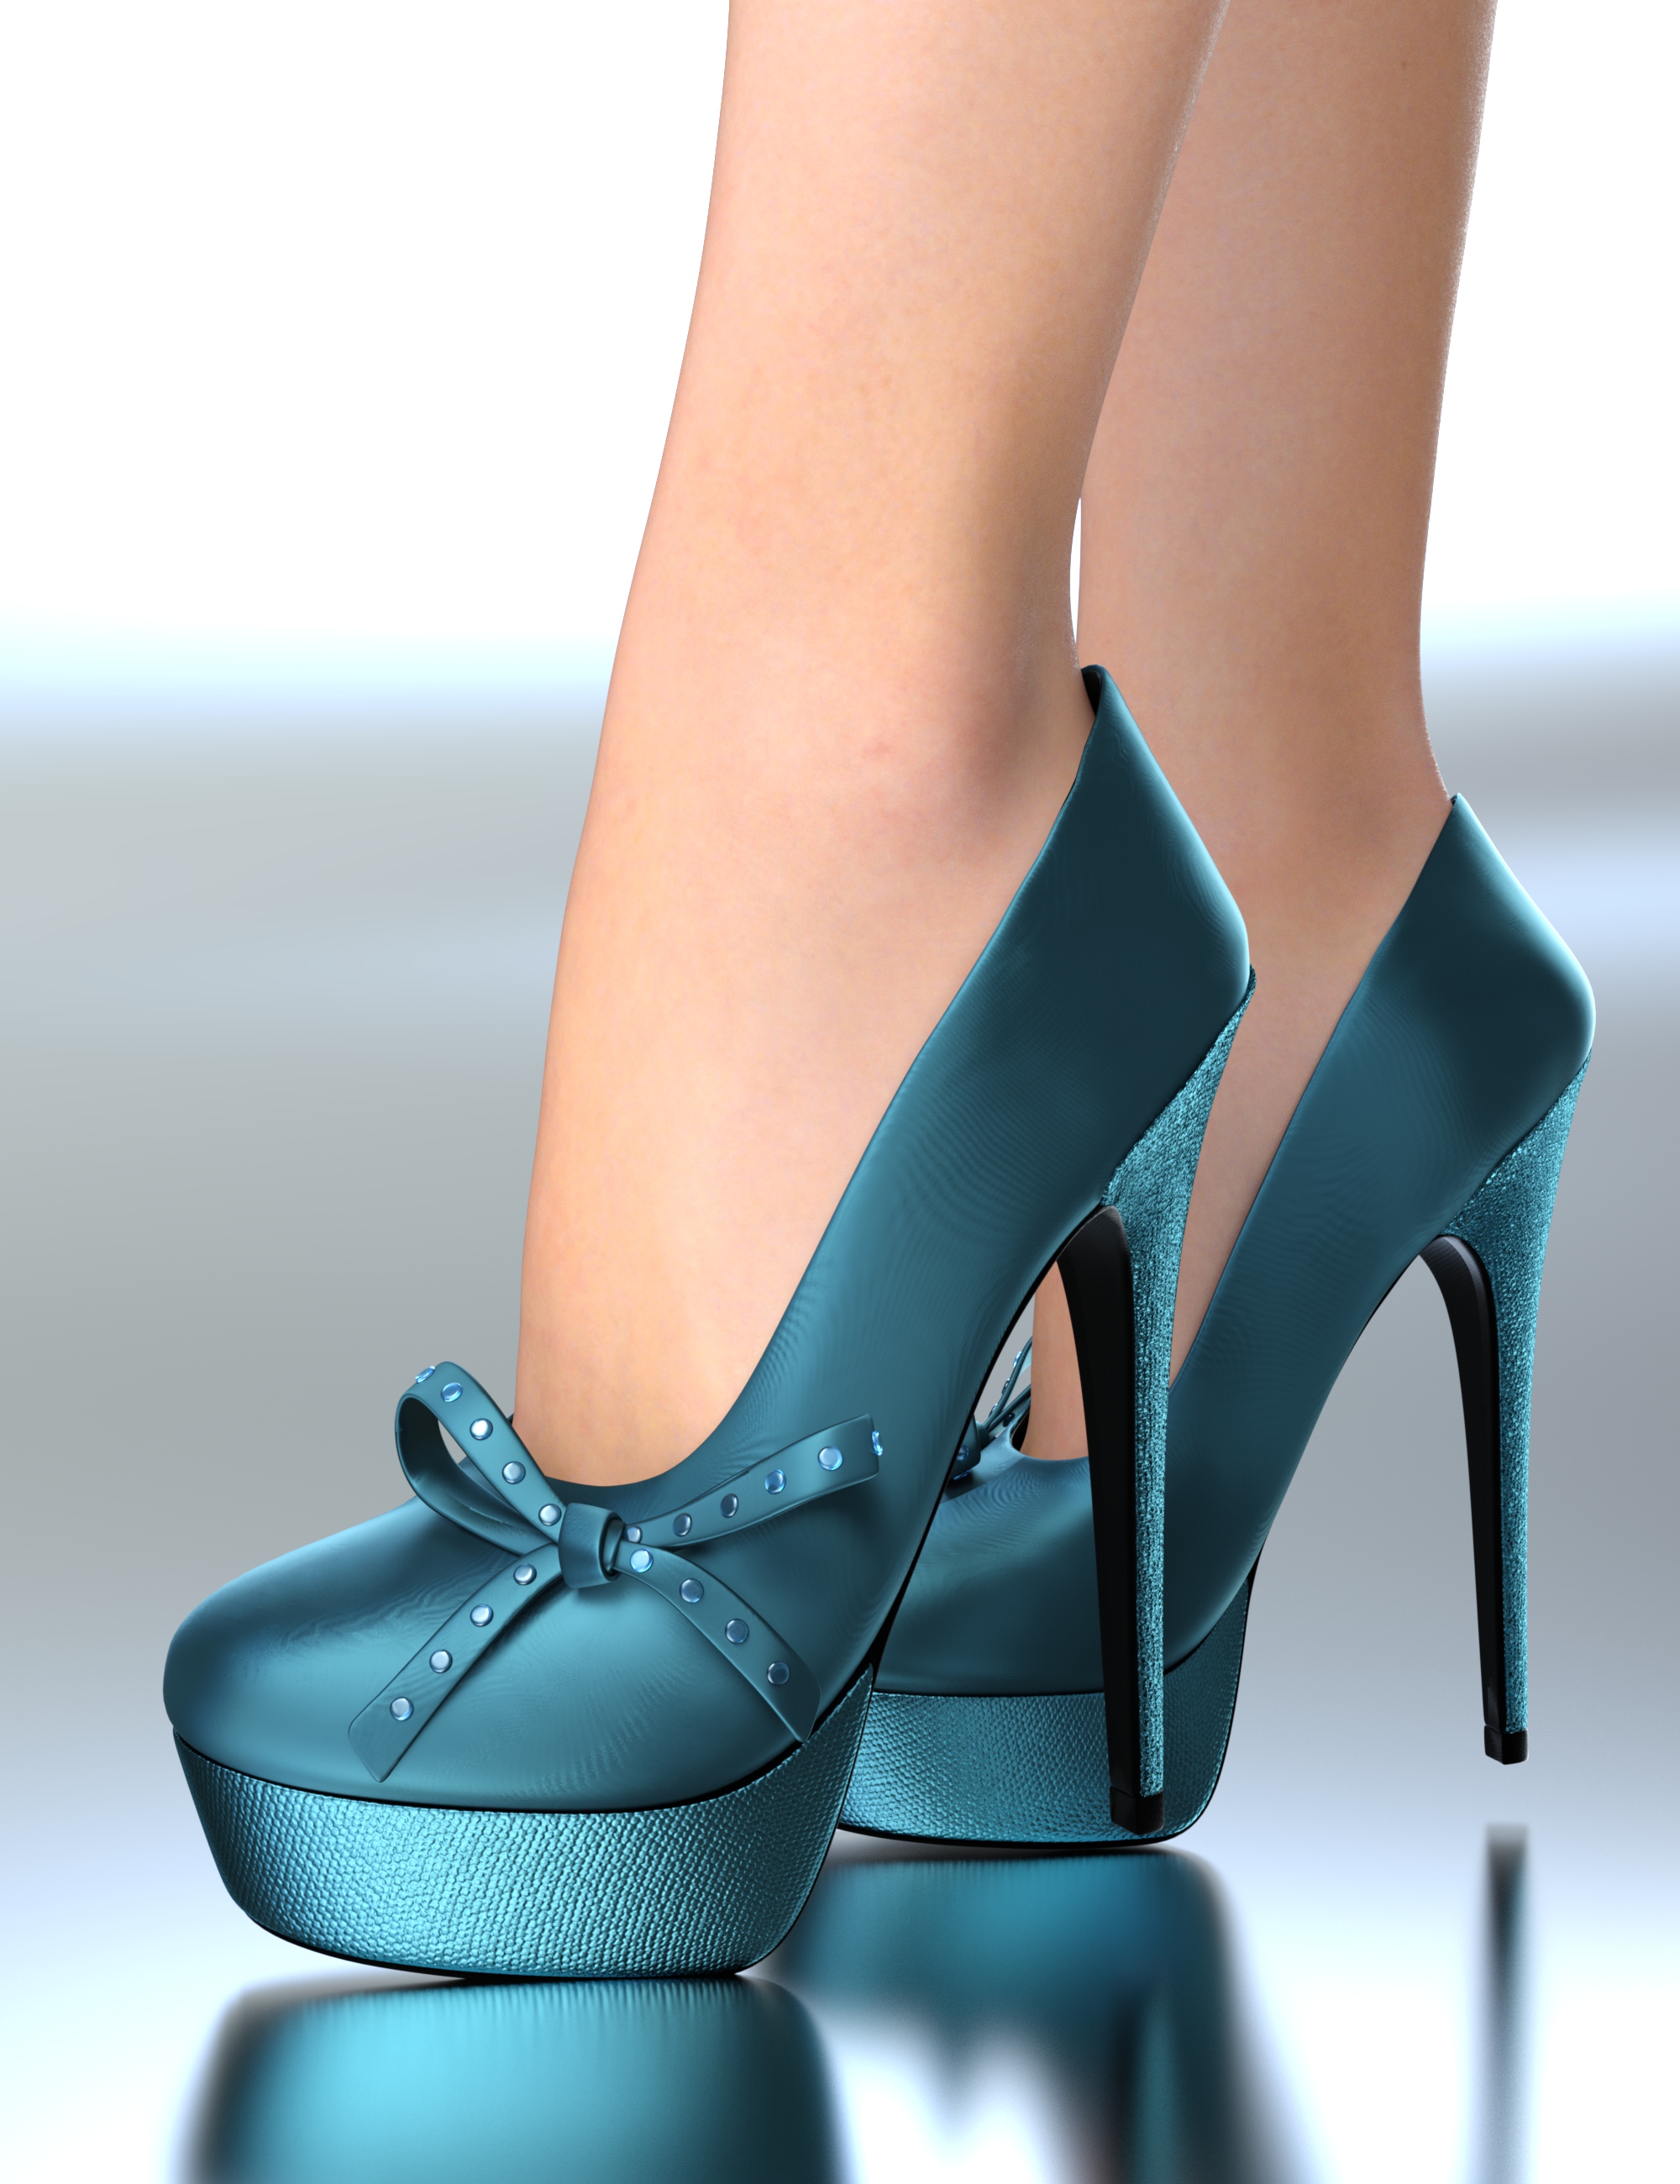 Serenade Heels for Genesis 9 by: Nelmi, 3D Models by Daz 3D